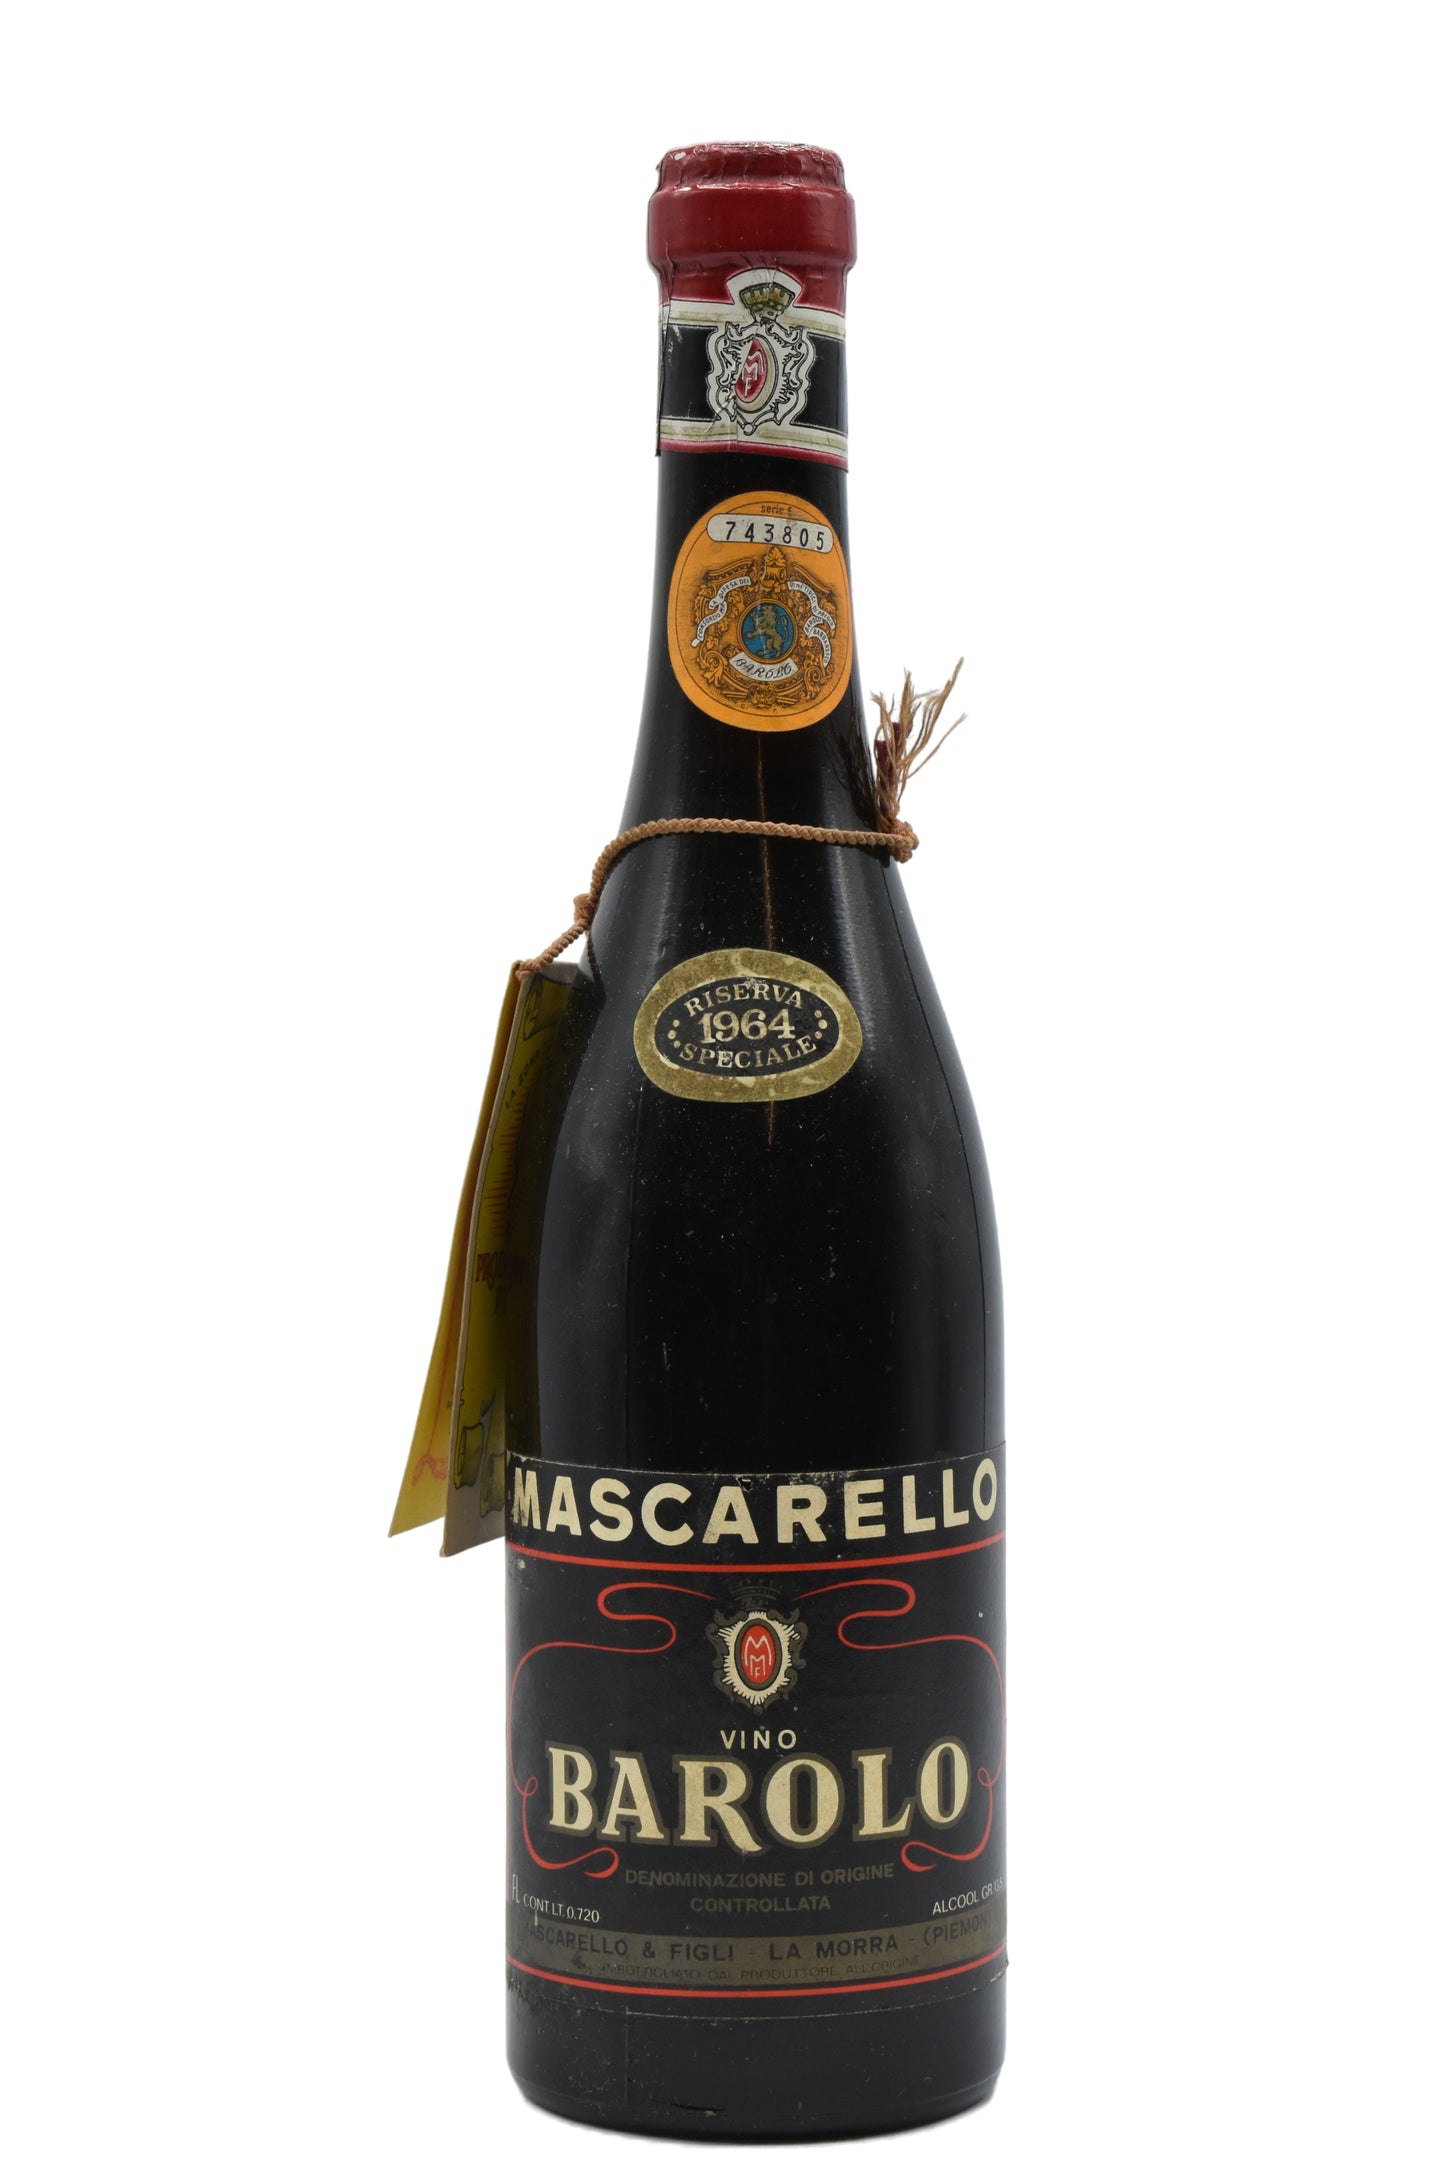 1964 Mascarello (Michele), Barolo Riserva Speciale 750ml - Walker Wine Co.